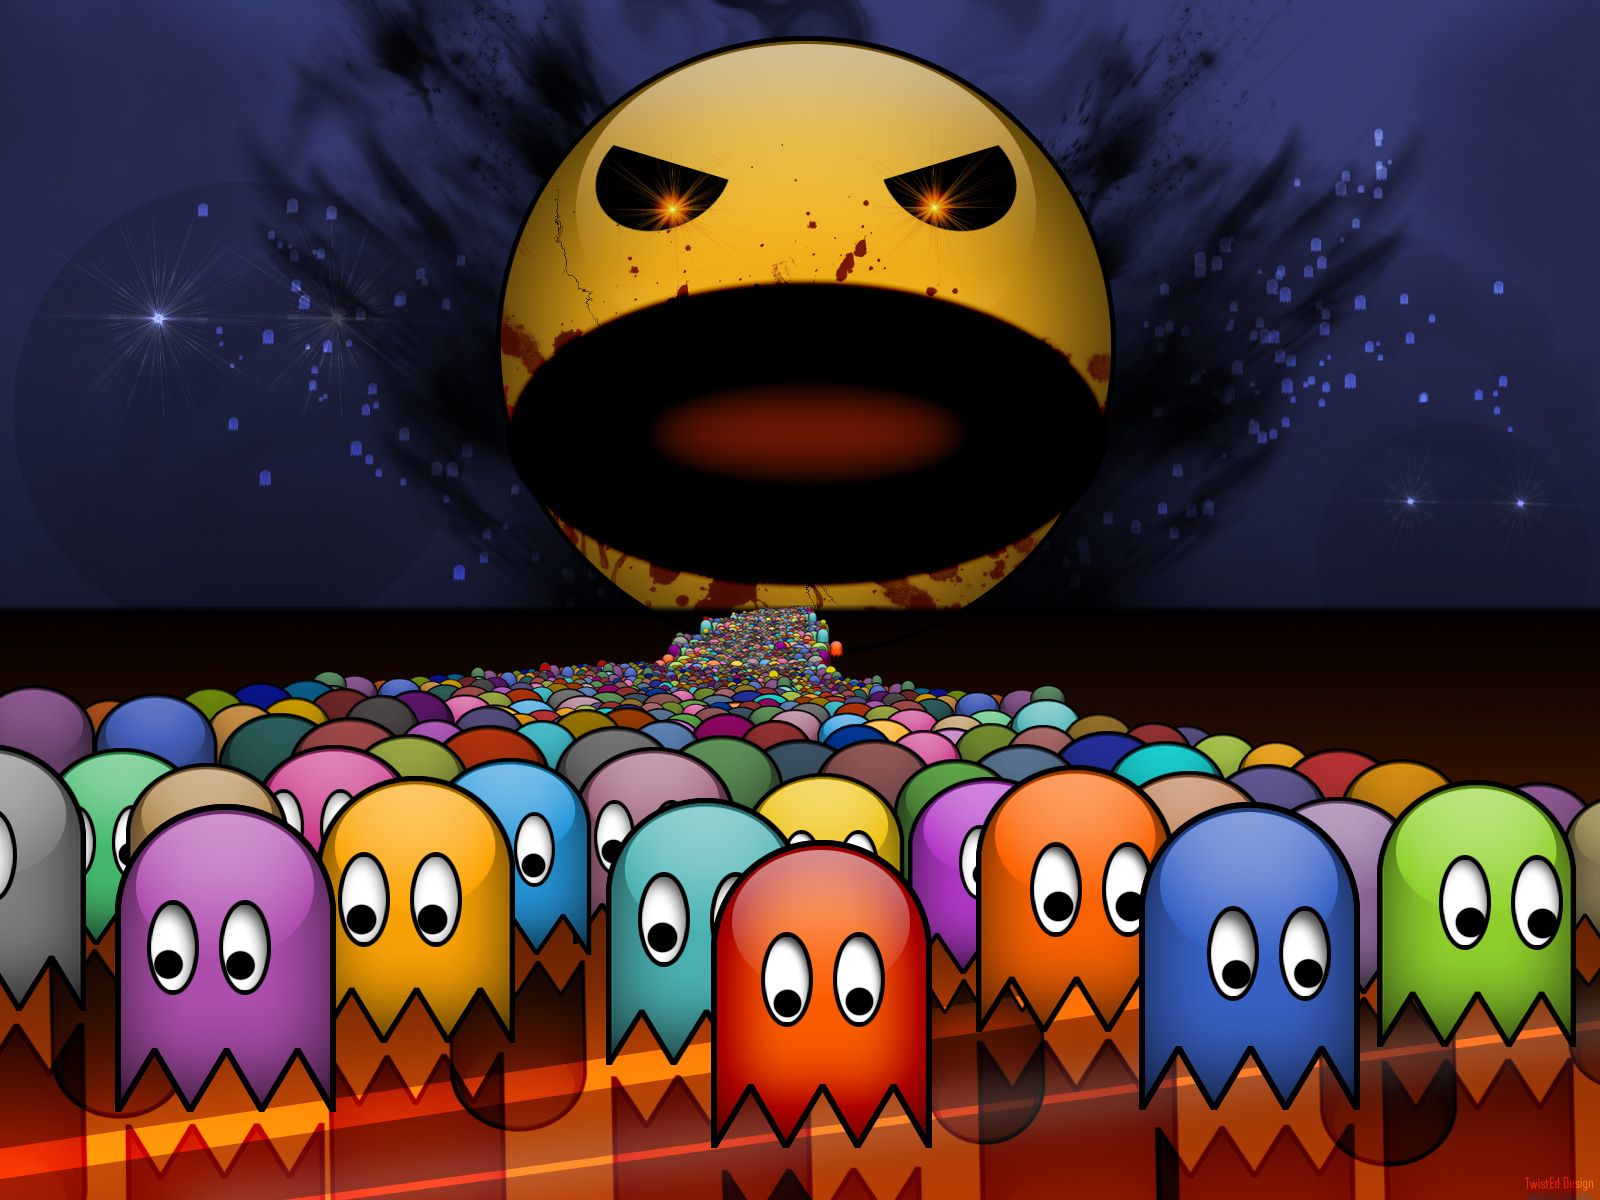 Evil Pac Man Fondos de pantalla | 1600x1200 | ID: 13089 - WallpaperVortex.com